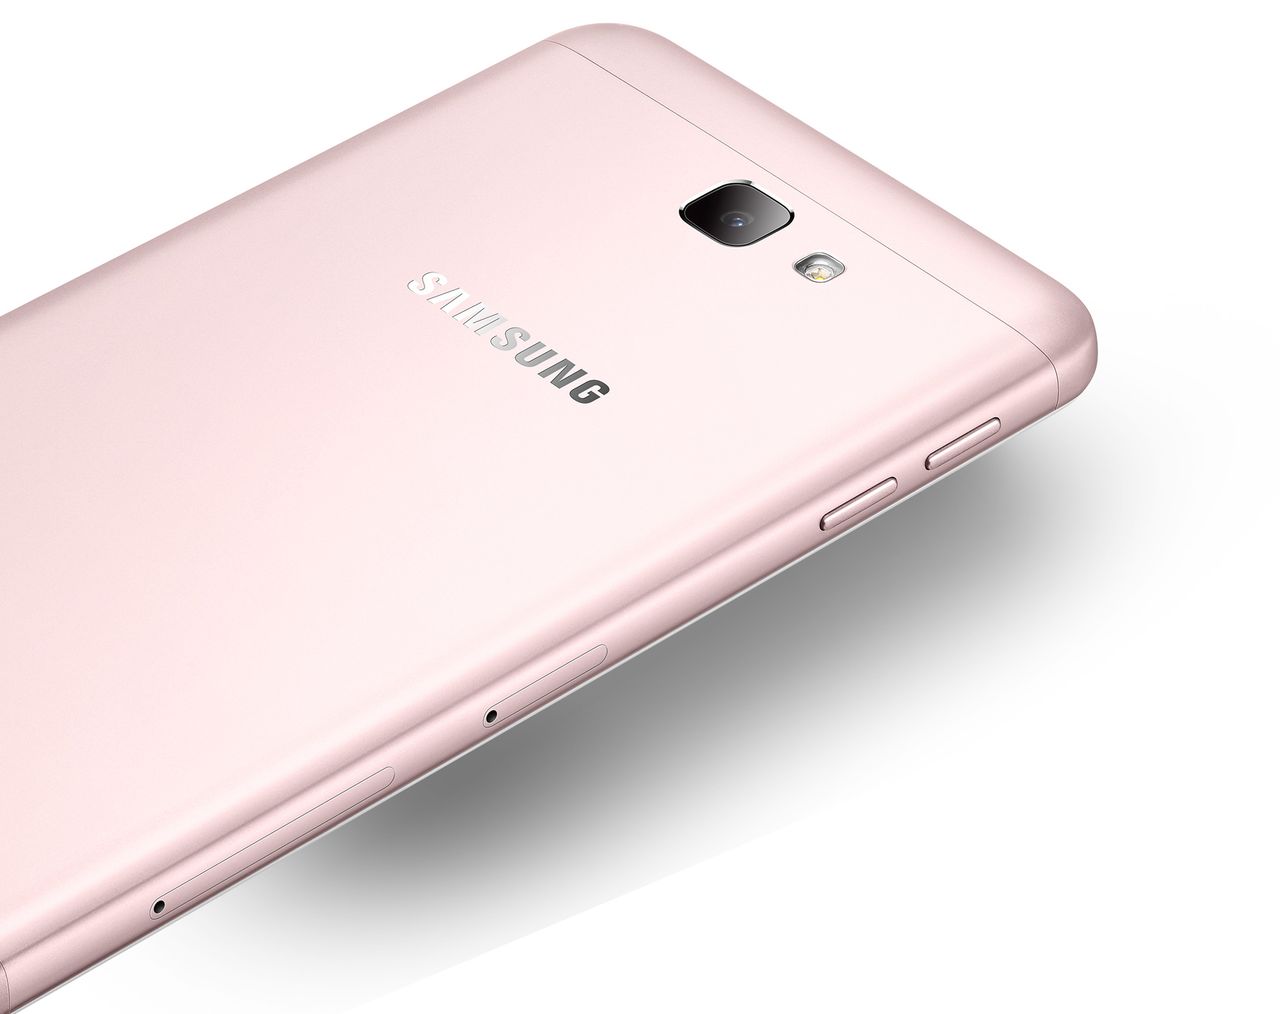 Samsung Galaxy On7 (2016) oficjalnie. Wystarczy na niego spojrzeć, by wiedzieć, do jakiego kraju trafi